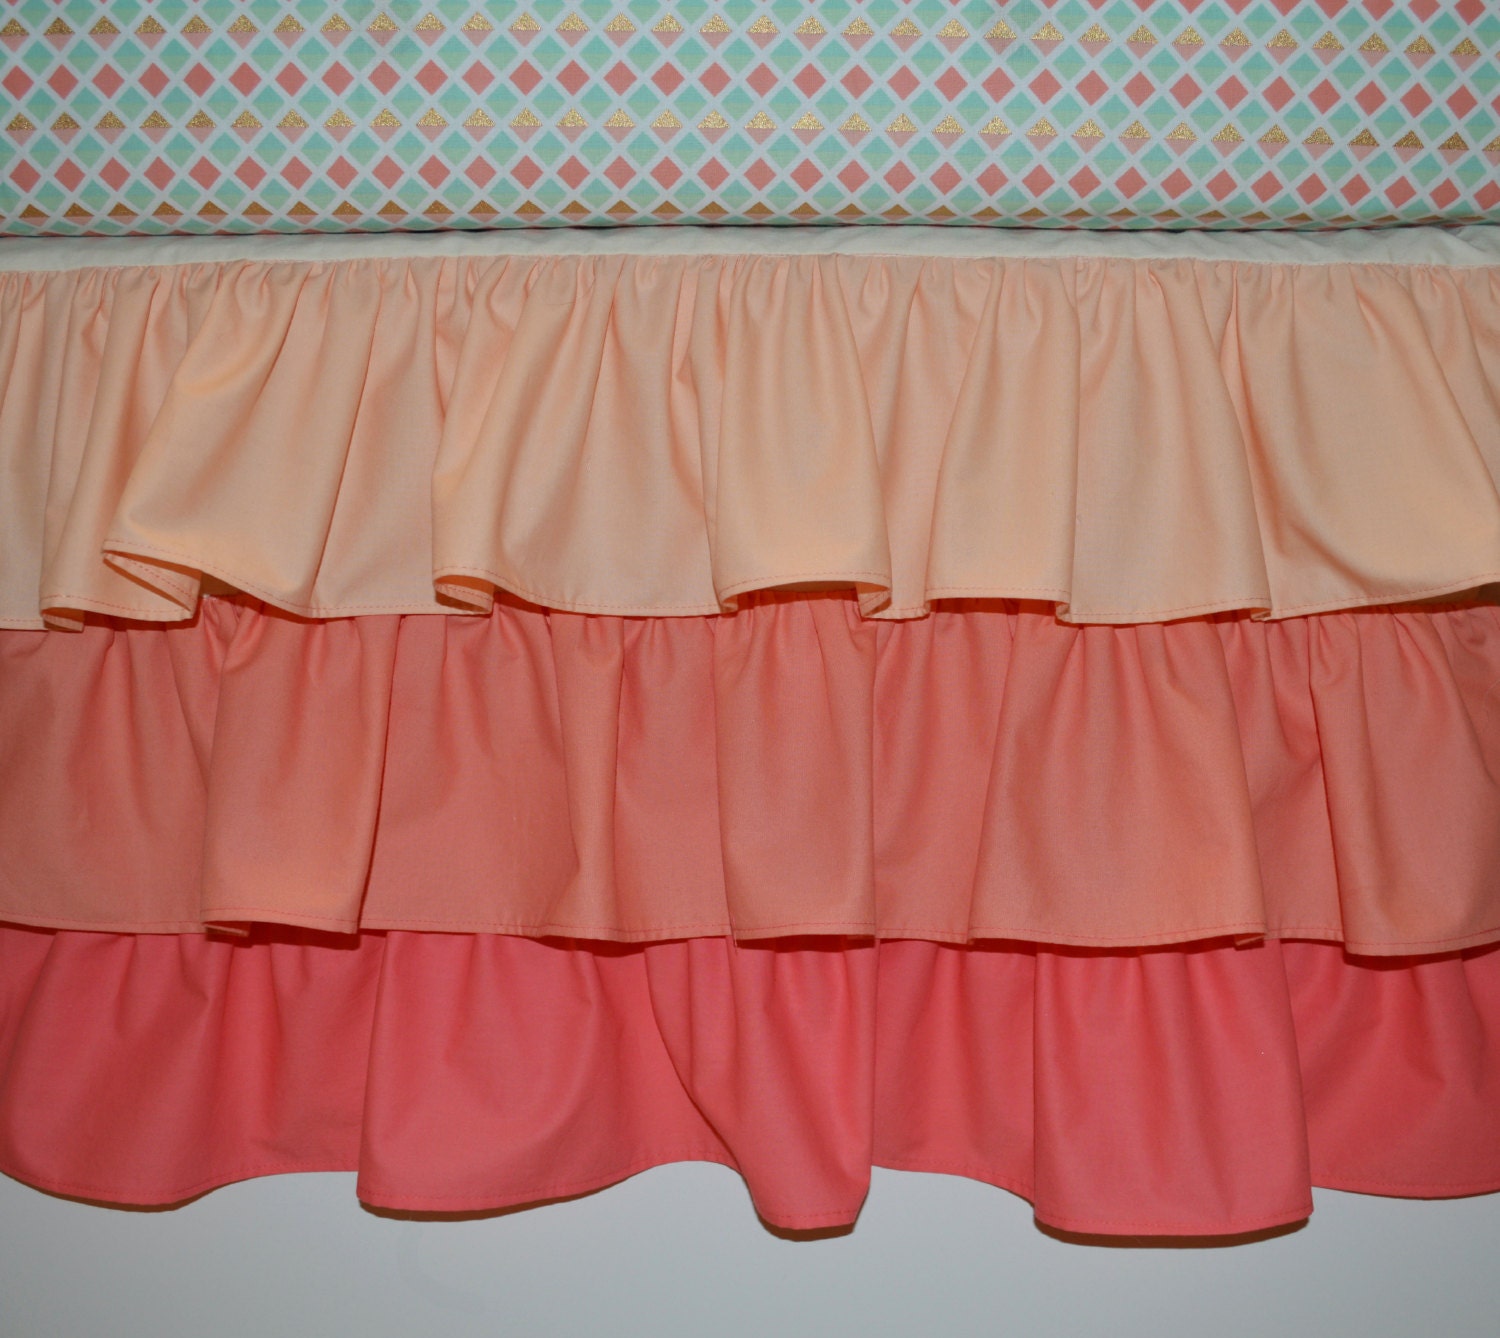 Waterfall Crib Skirt Ruffled Crib Skirt Coral Custom Crib